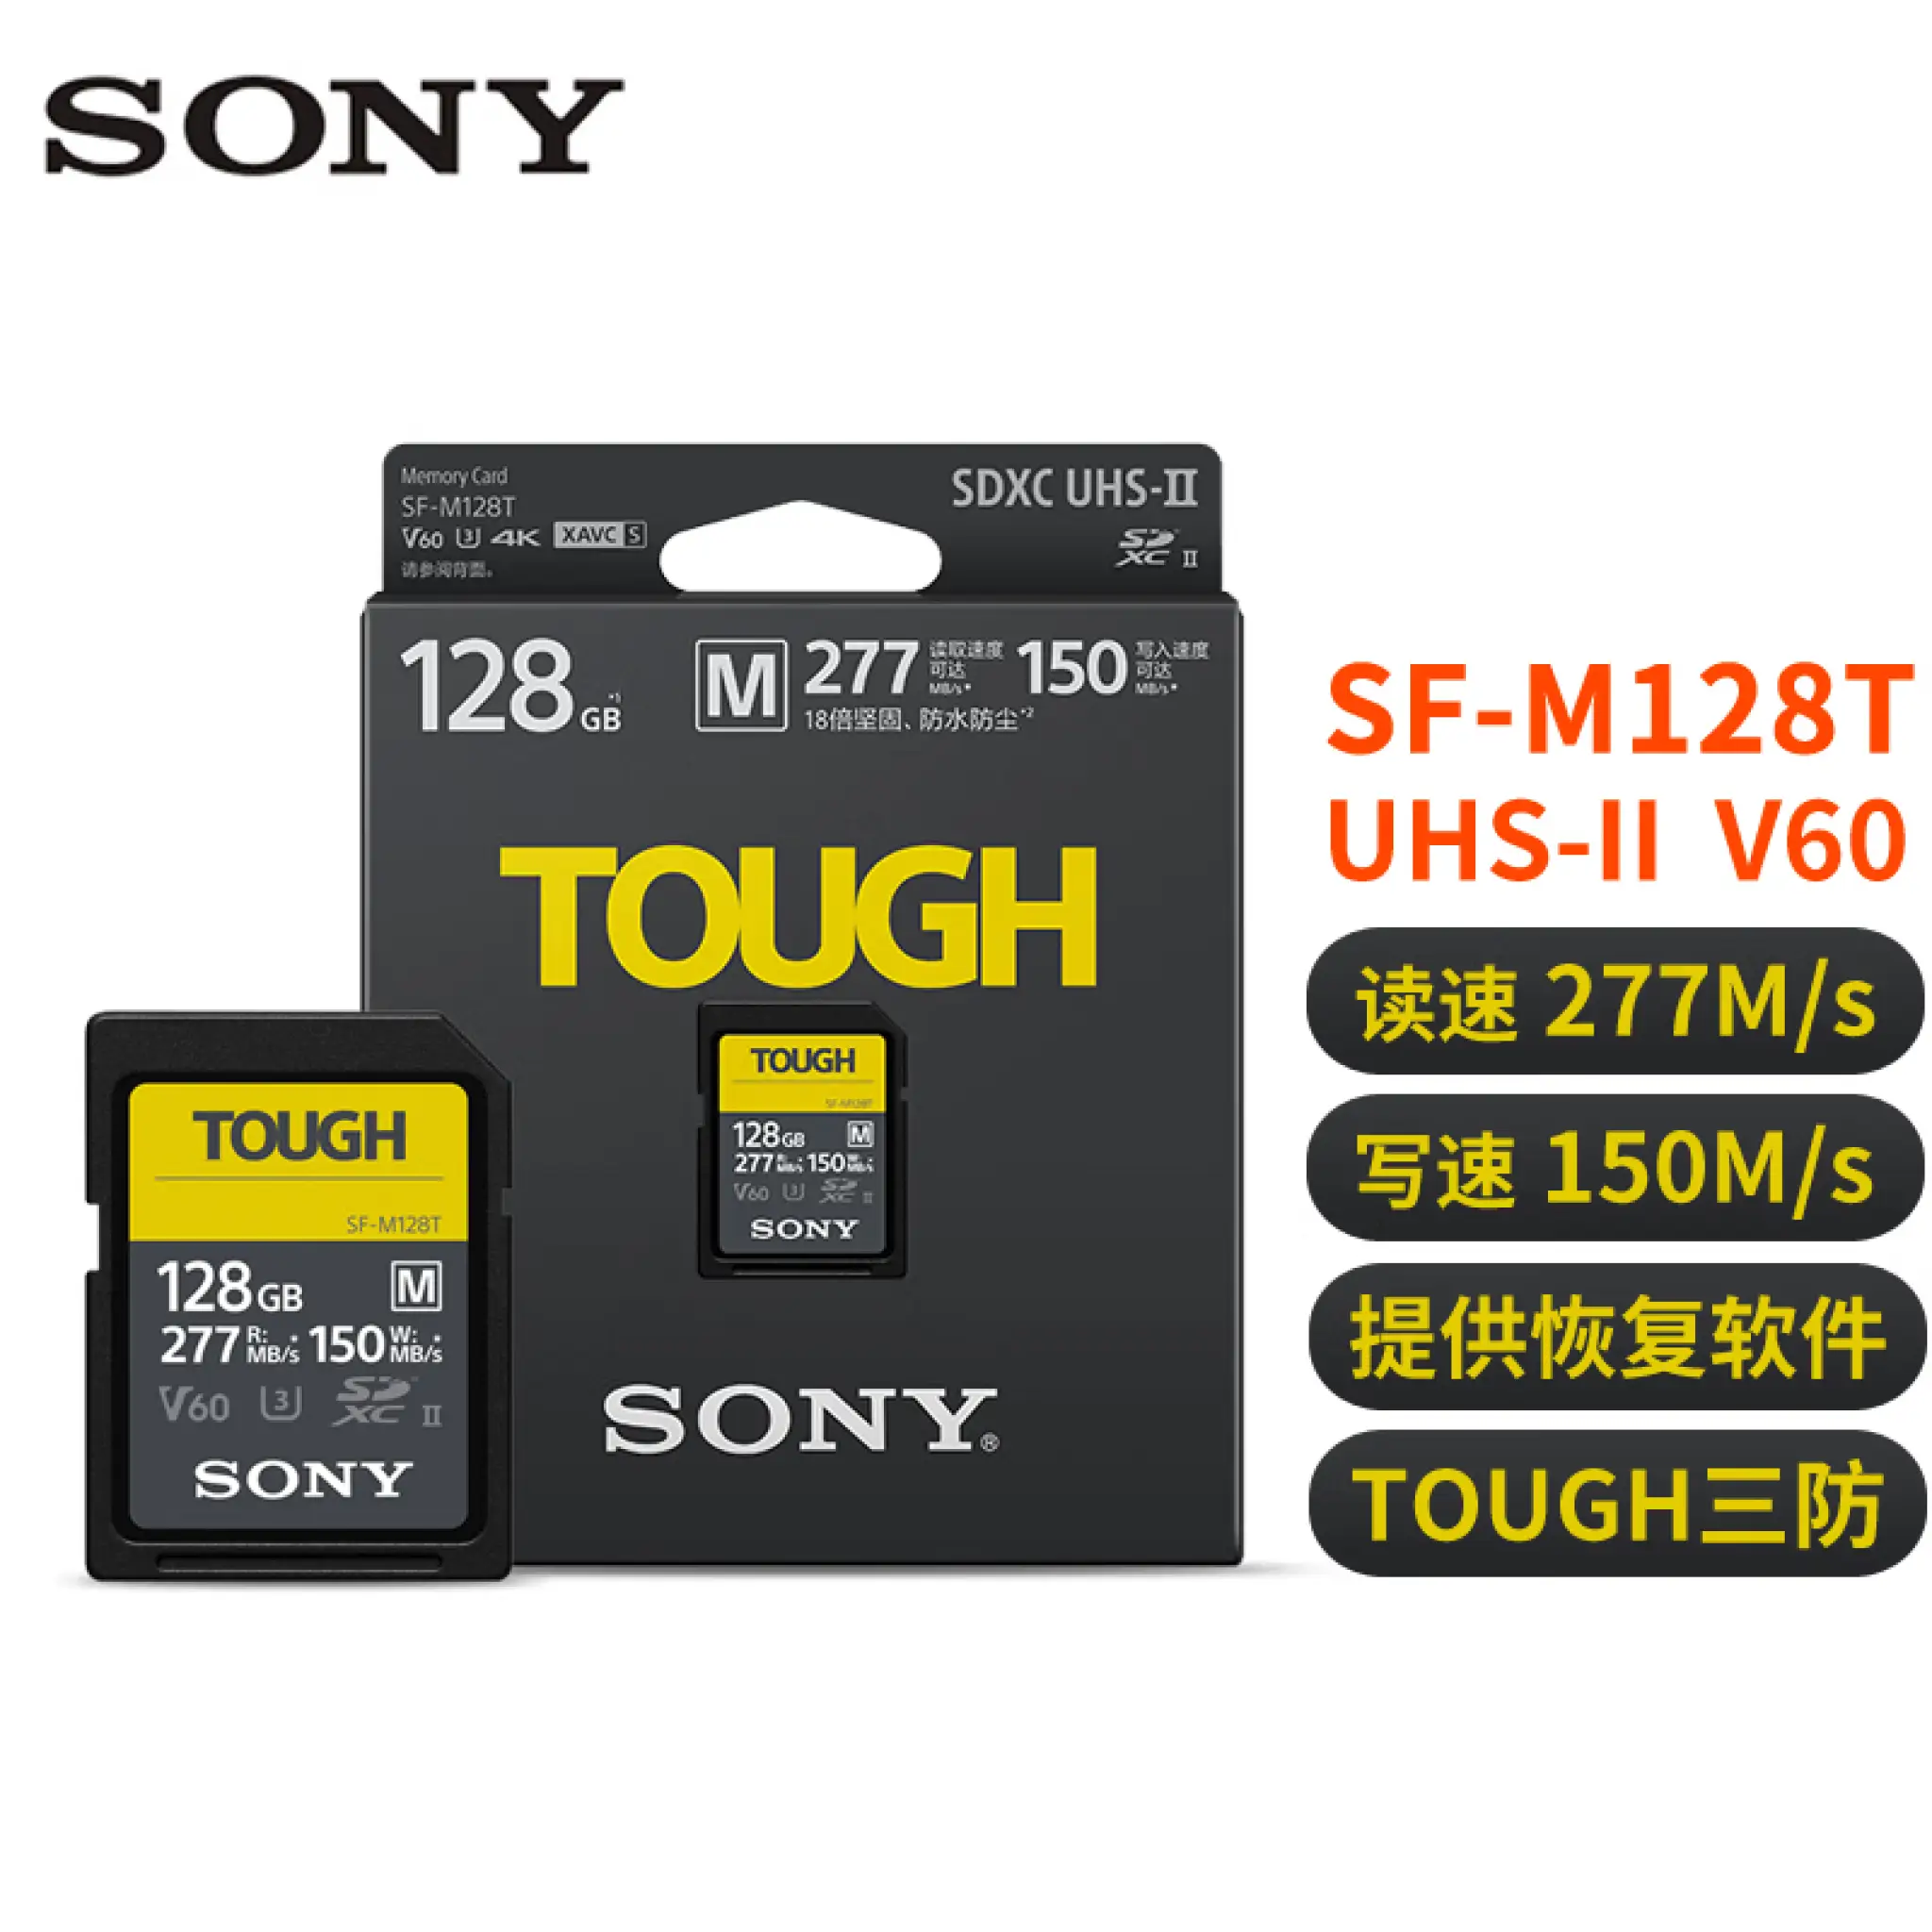 SONY ソニー SDカード TOUGH SF-M128T 128GB - メモリーカード